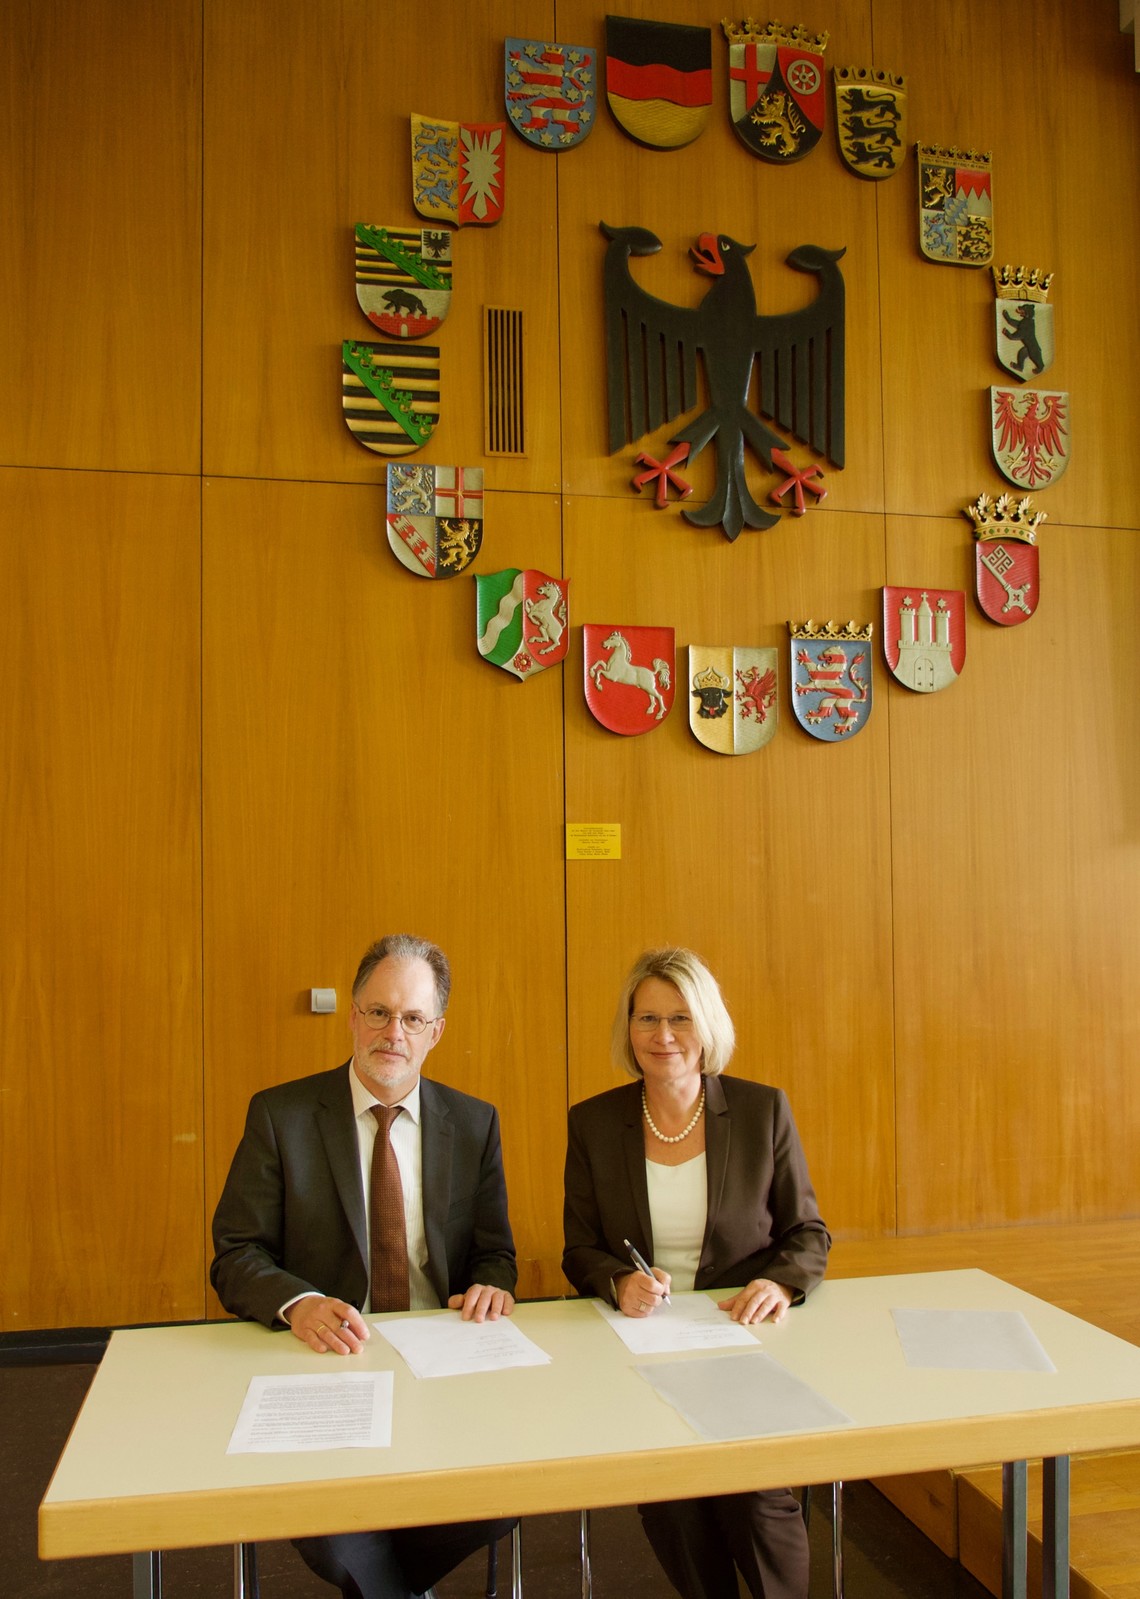 Unterzeichnung der Kooperationsvereinbarung zwischen Universität Speyer und Metropolregion Rhein-Neckar | © DUV Speyer / Lutz Berger